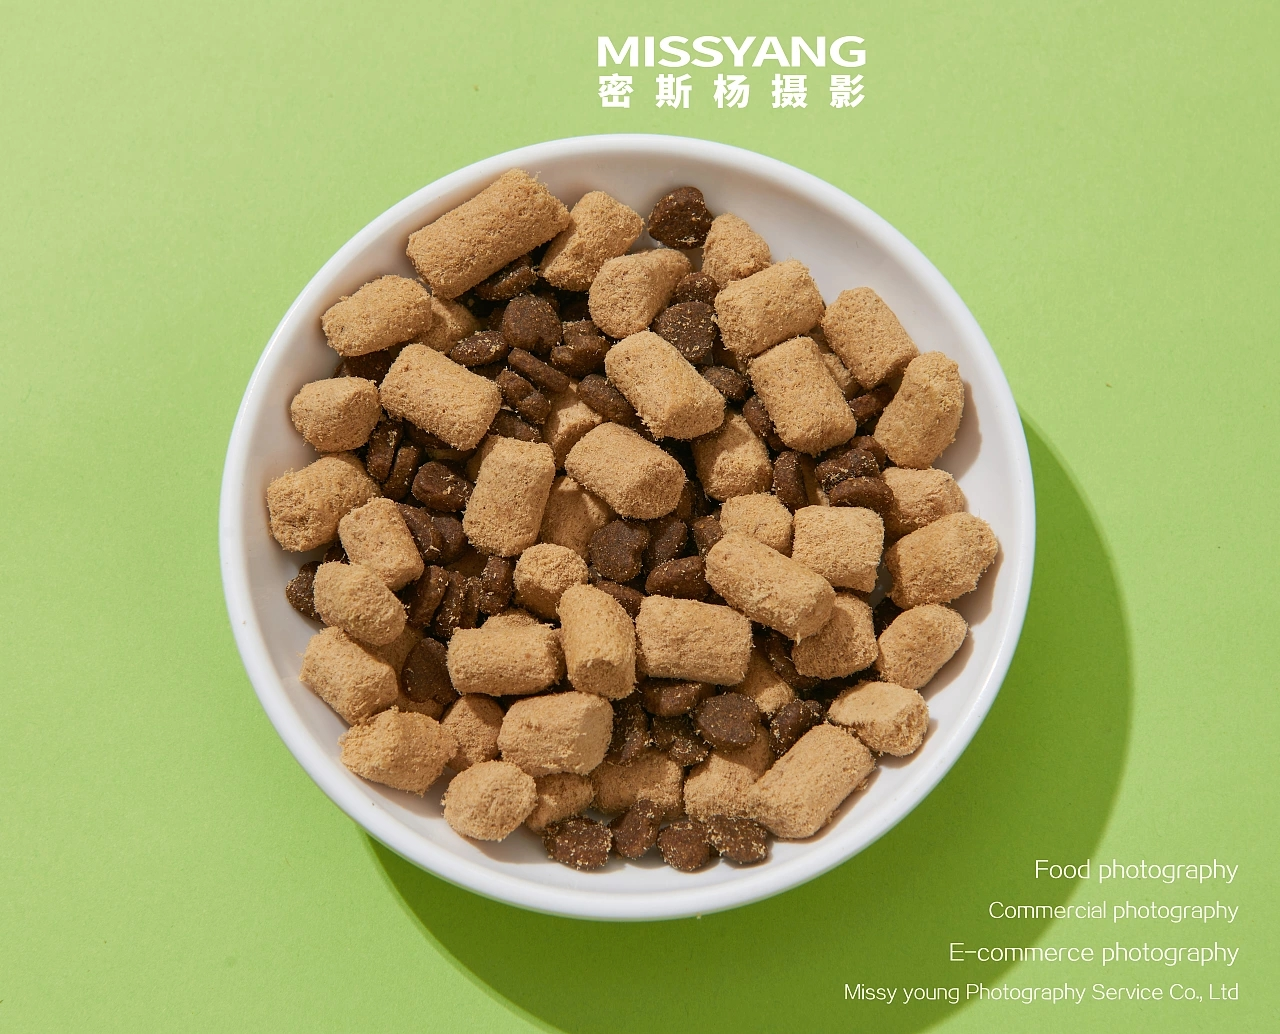 El alimento para mascotas dingdang enriquece a las lindas mascotas y las hace crecer más saludables (3)